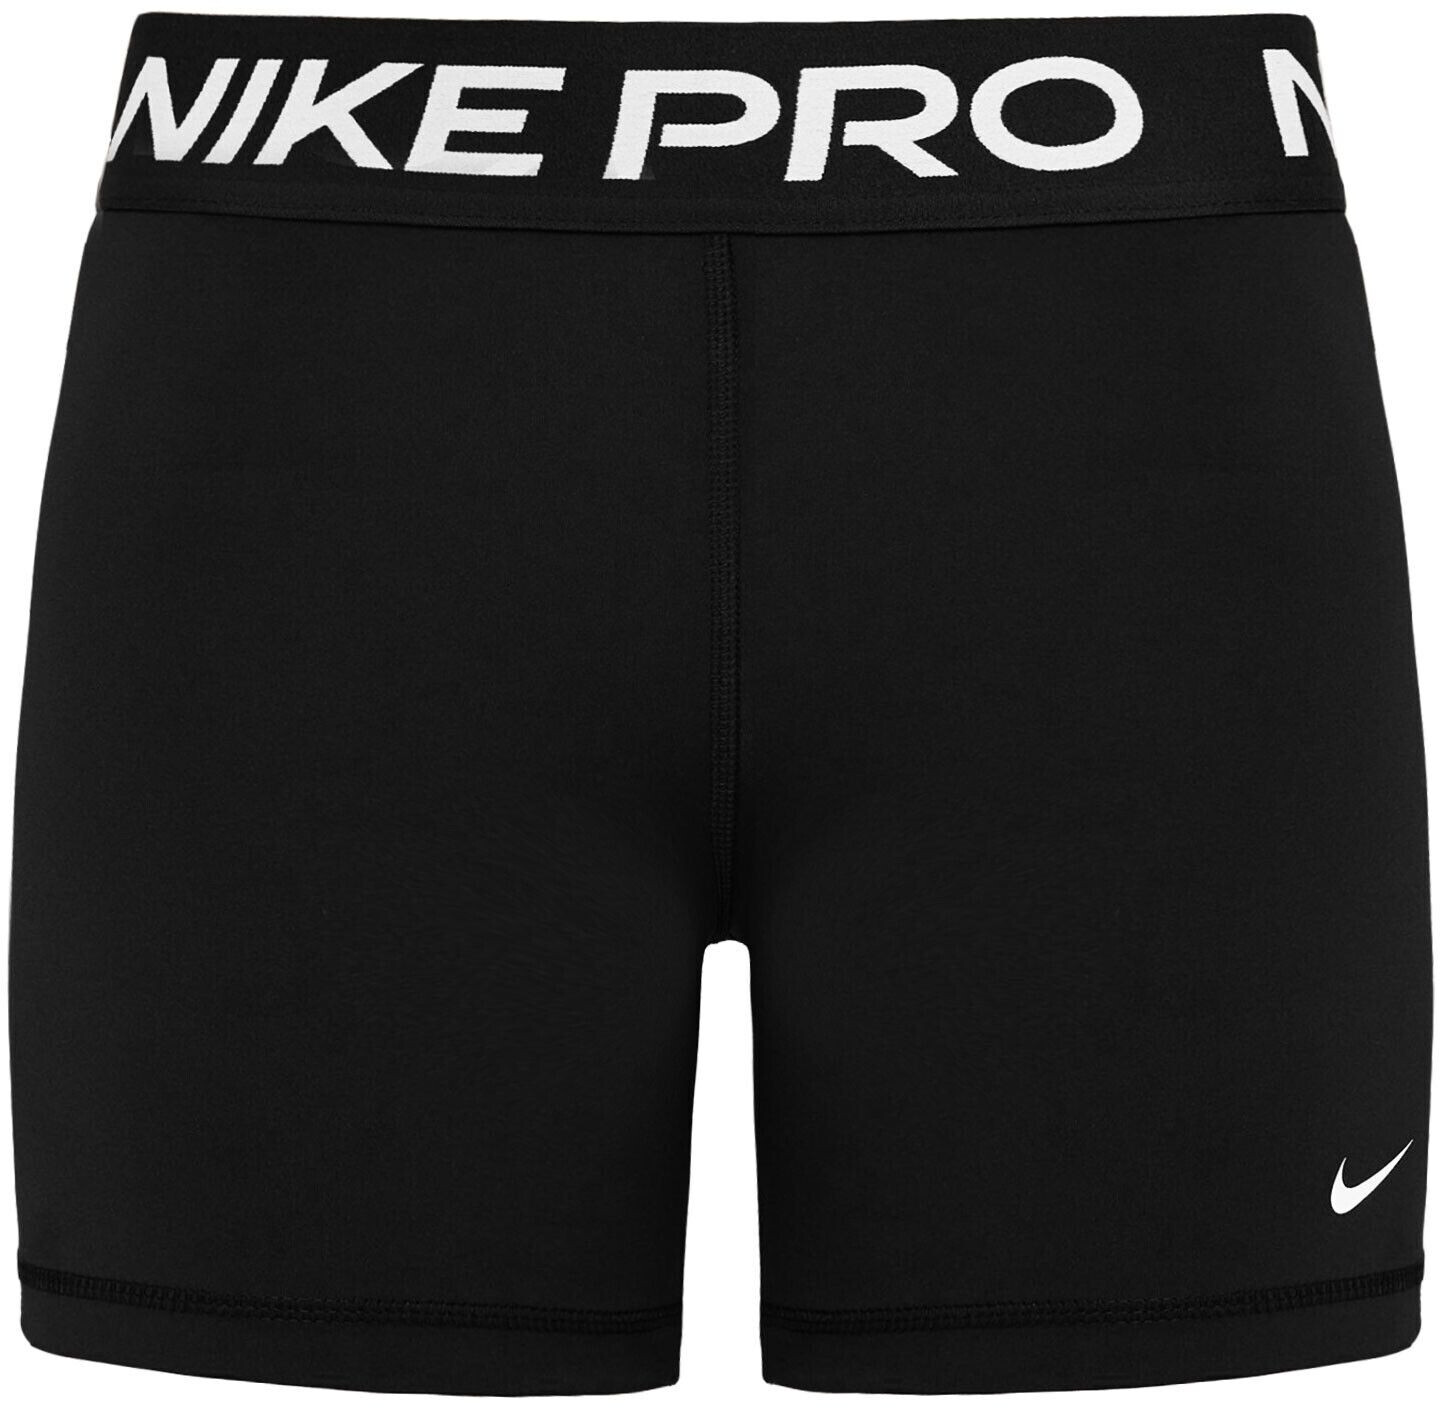 Nike mallas cortas Pro en promoción